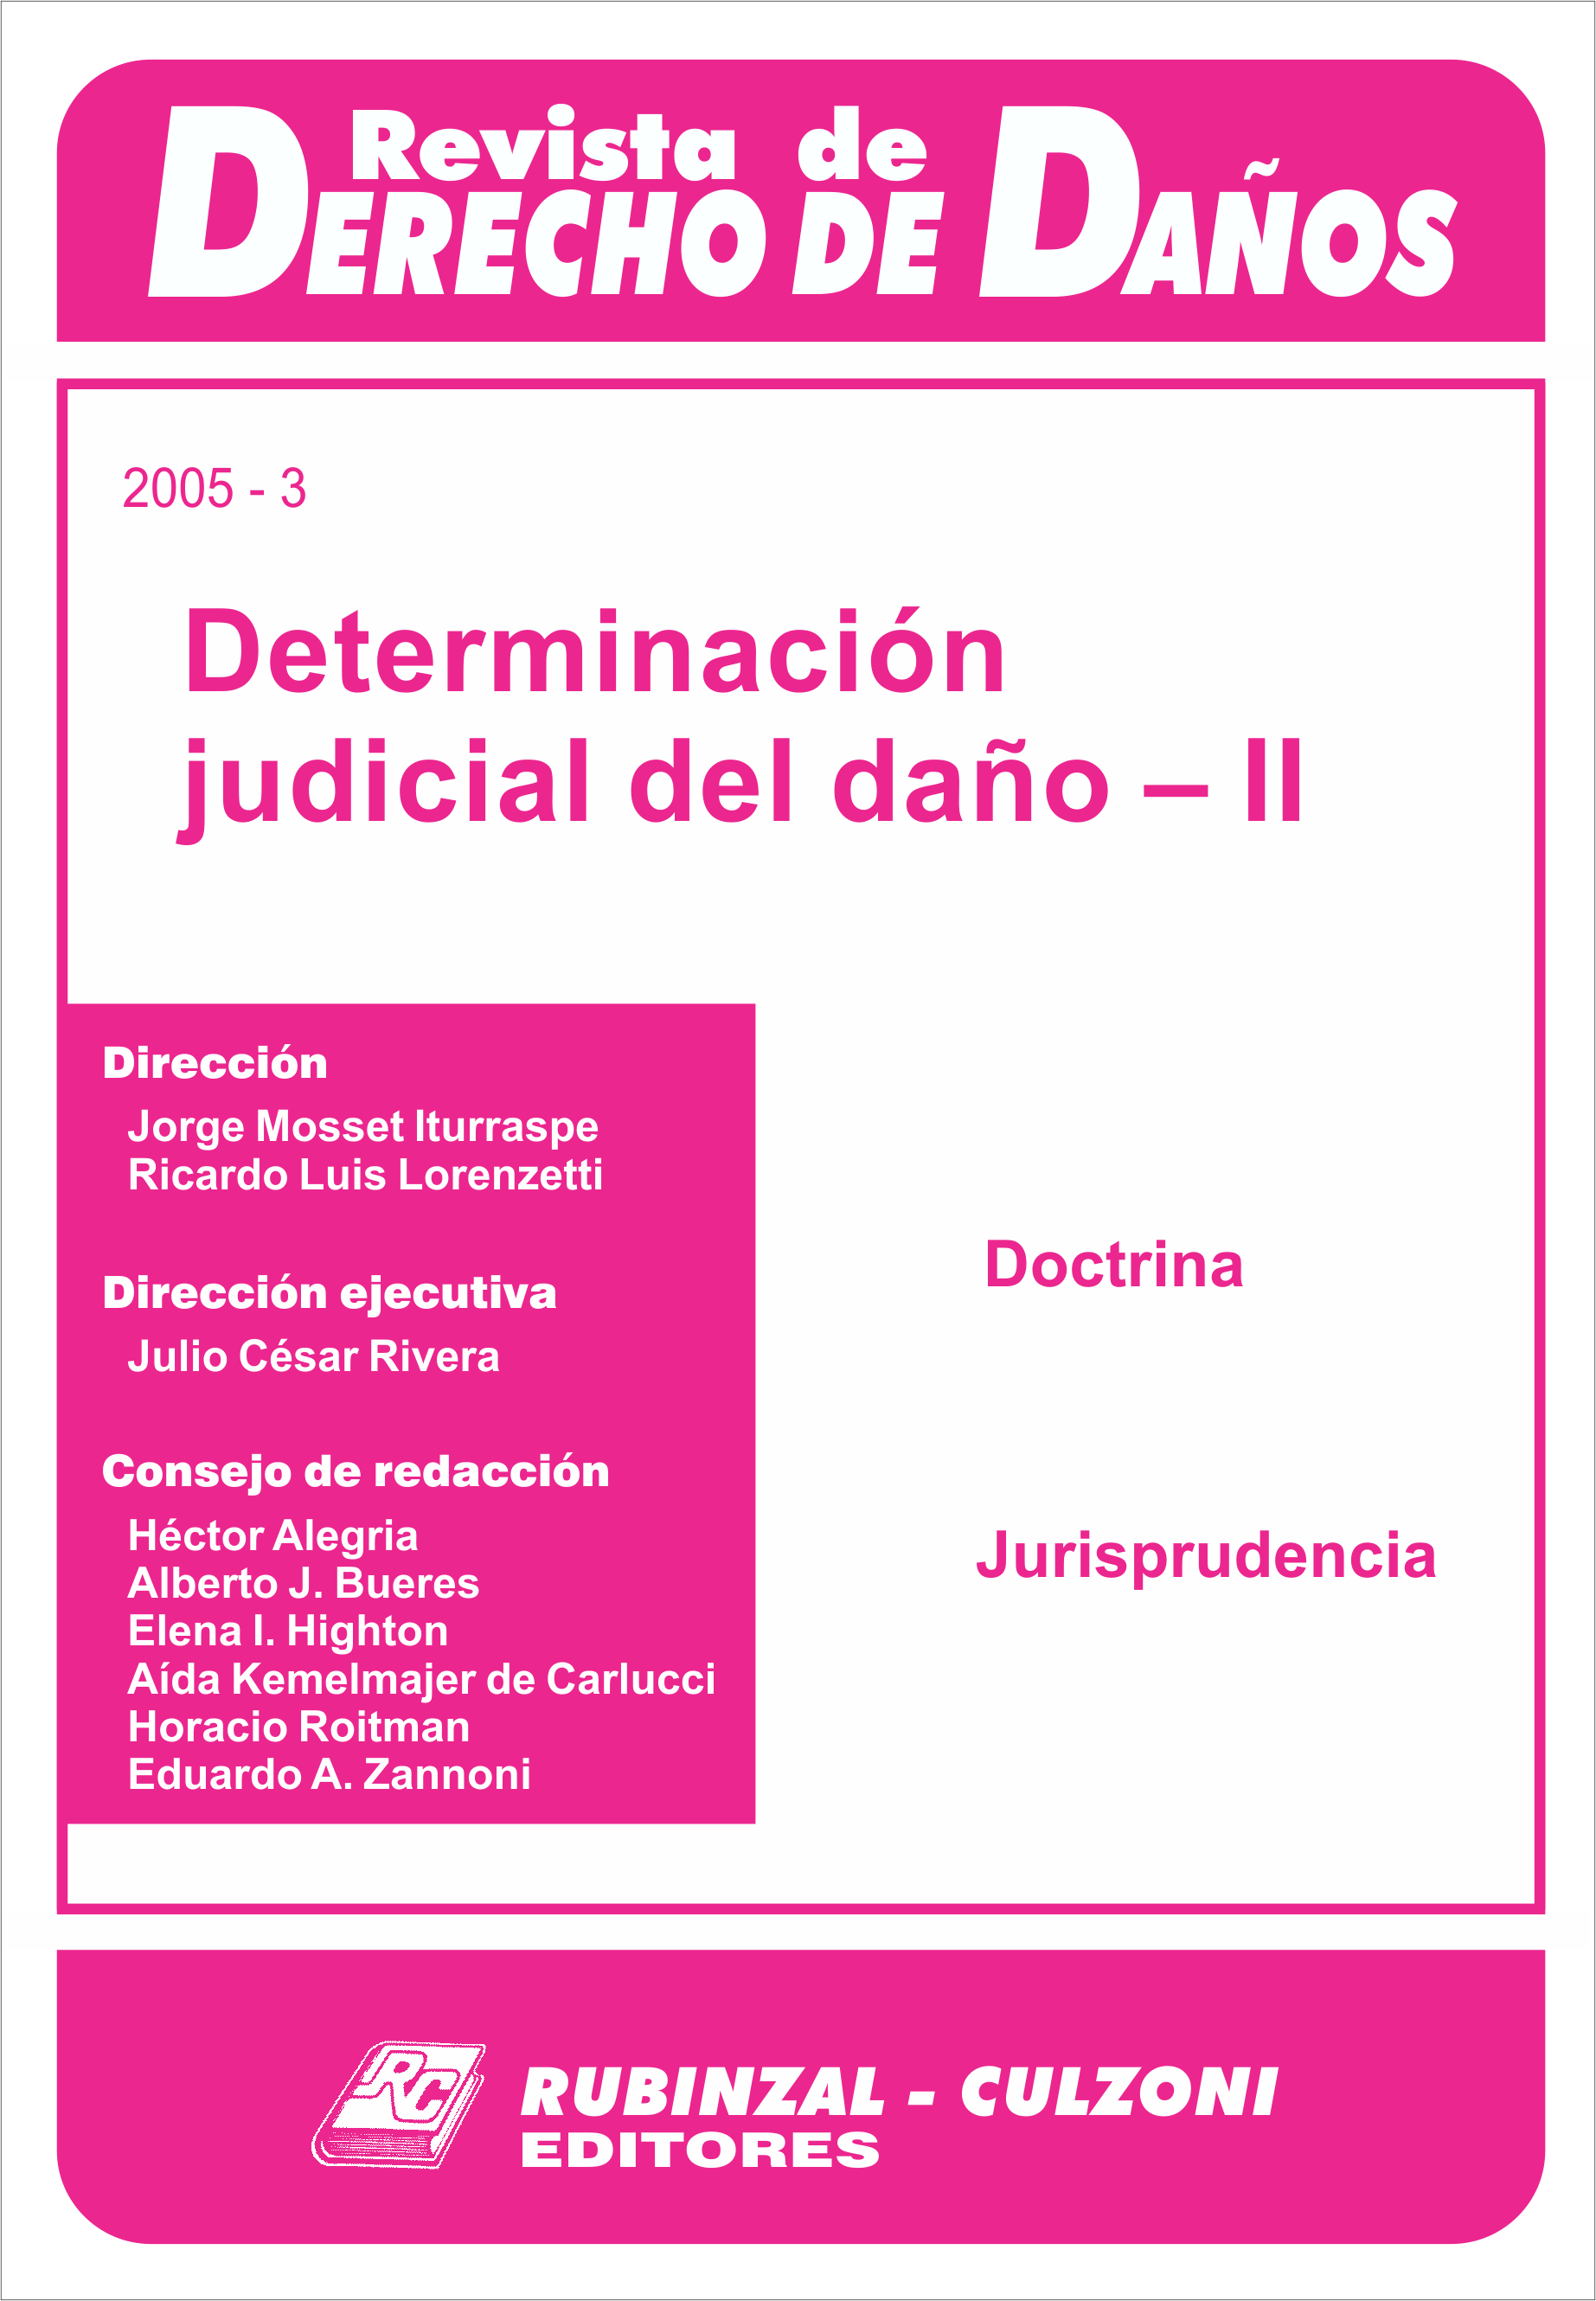 Revista de Derecho de Daños - Determinación judicial del daño - II